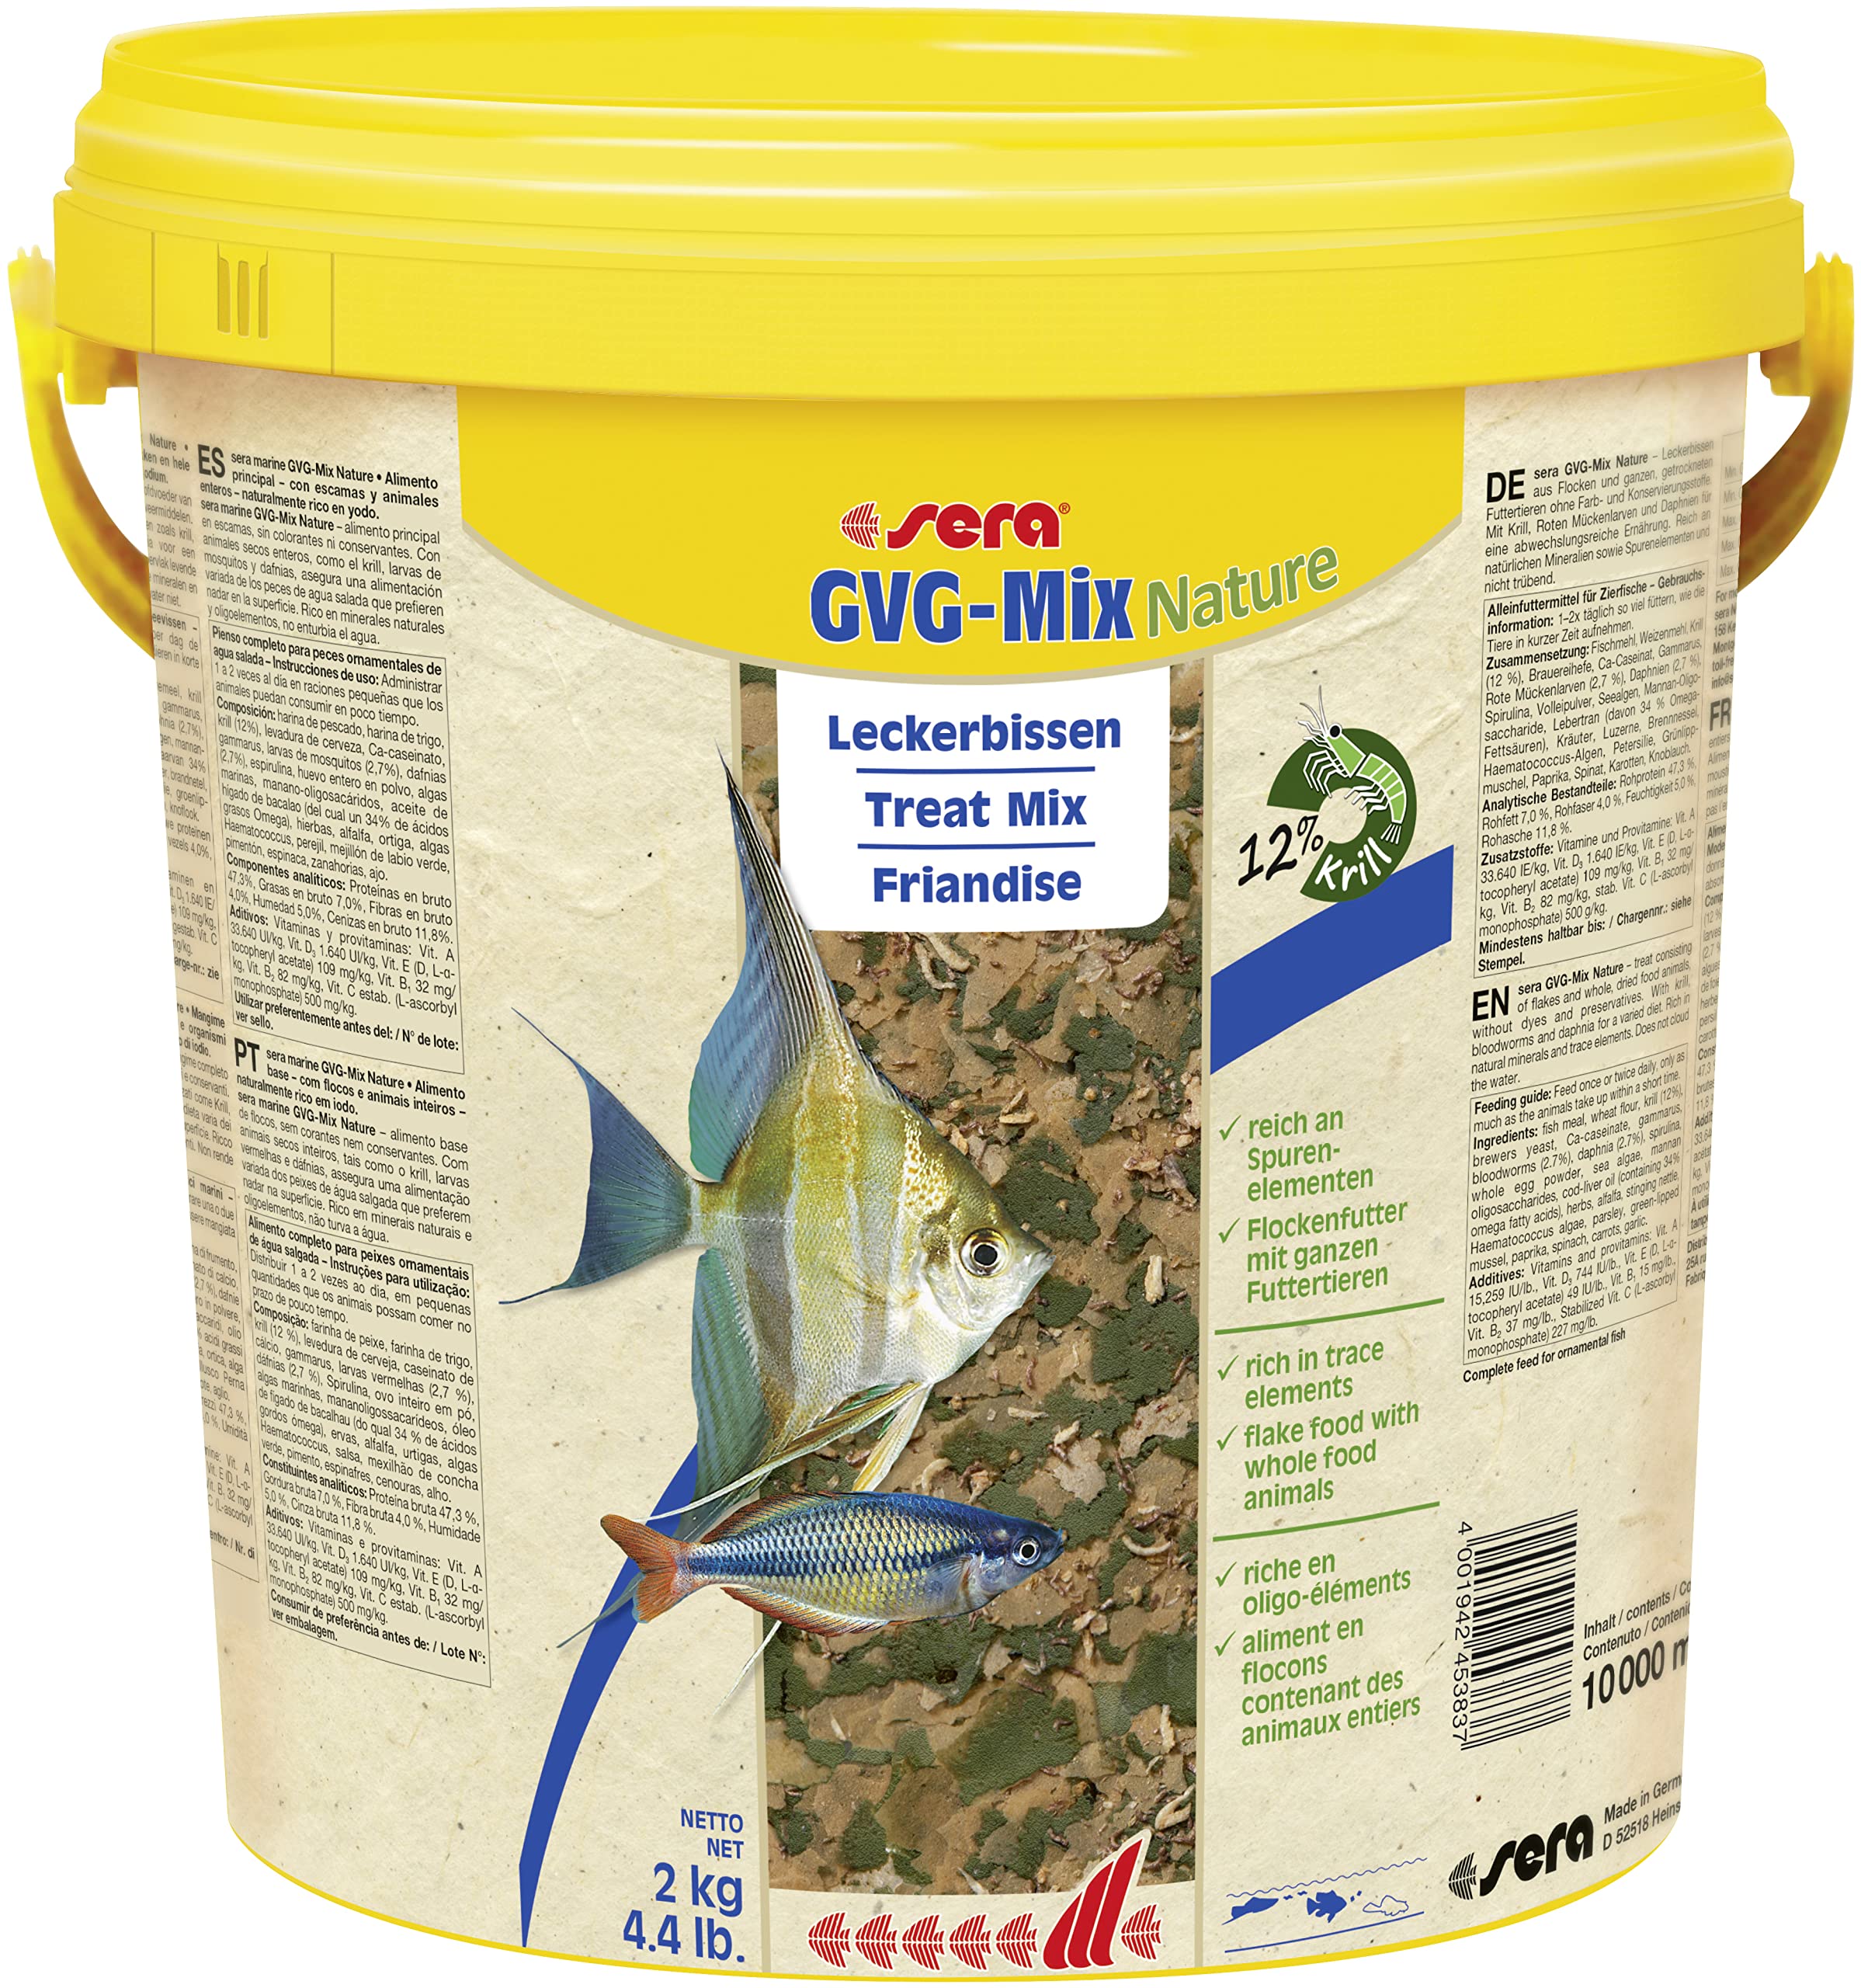 sera GVG-Mix Nature 10l (2 kg) der Leckerbissen aus Flocken & Futtertieren für mehr Abwechslung, Flockenfutter fürs Aquarium, Fischfutter mit hoher Verwertbarkeit, somit weniger Algen